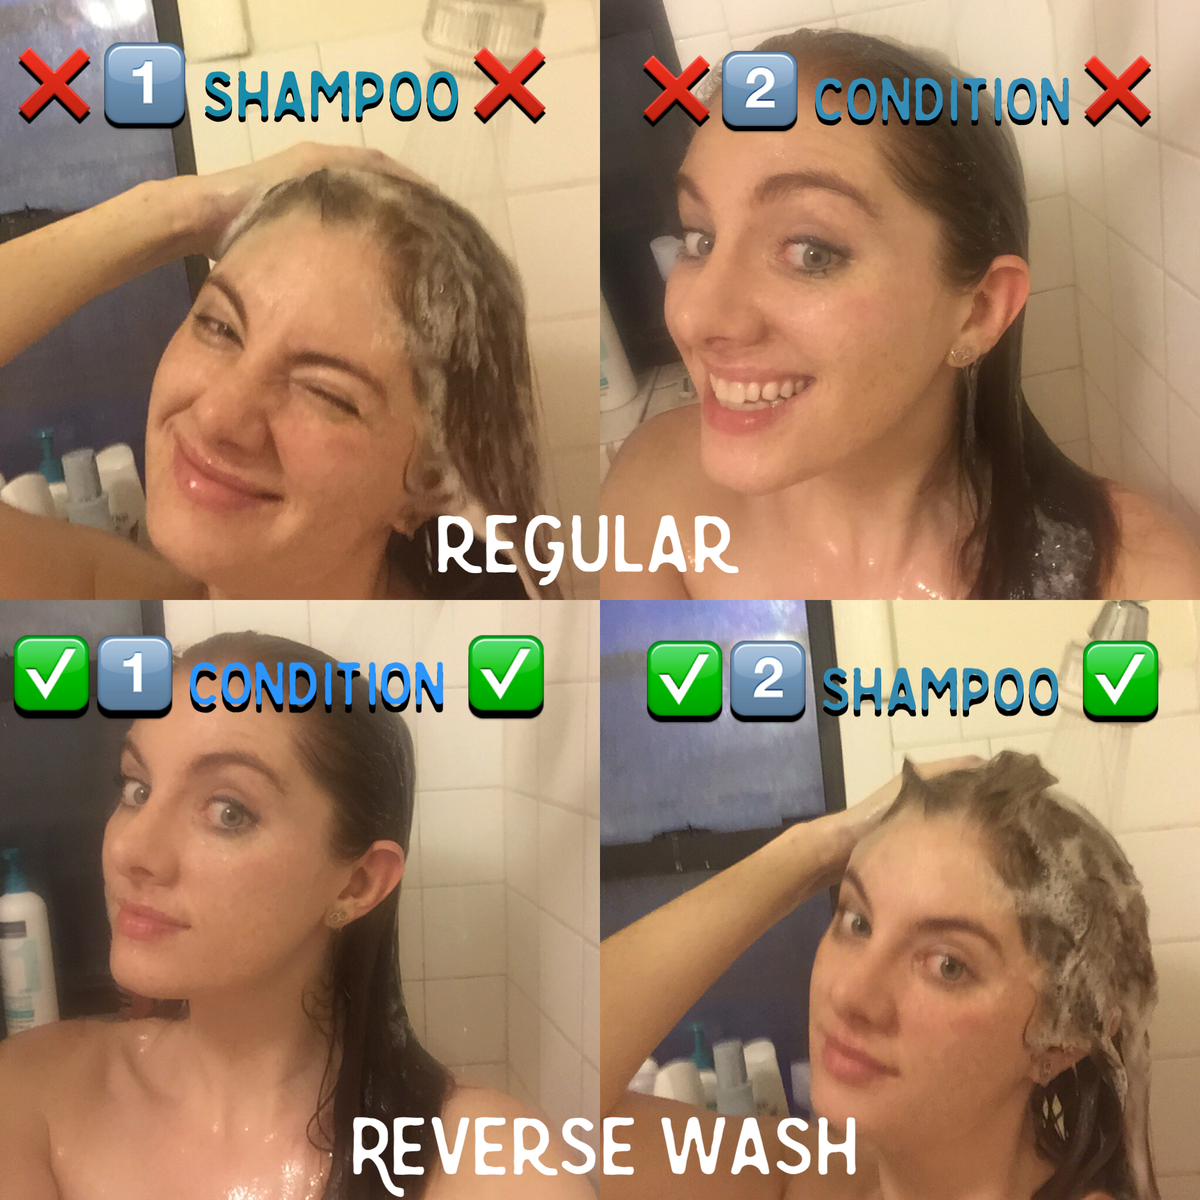 Funktioniert die umgekehrte Haarwaschmethode wirklich?